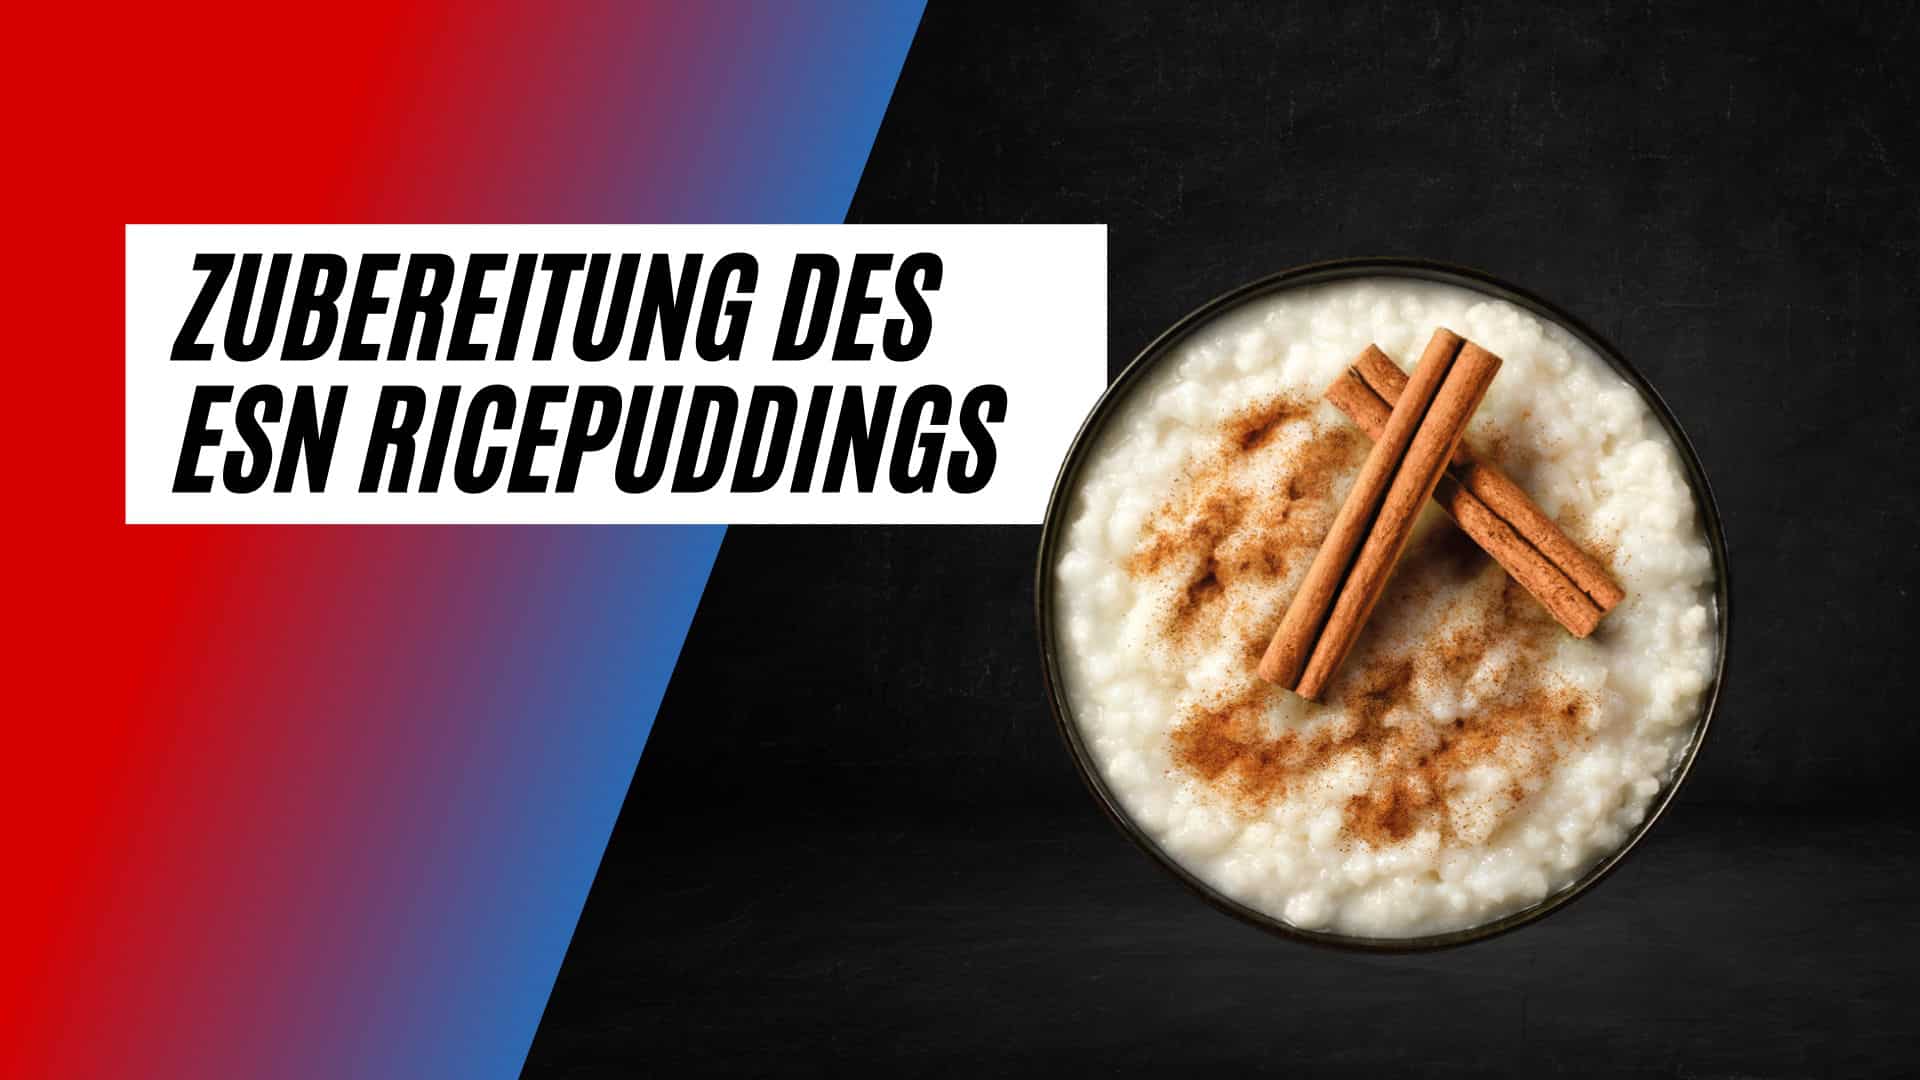 ESN Rice Pudding Zubereitung und Geschmack